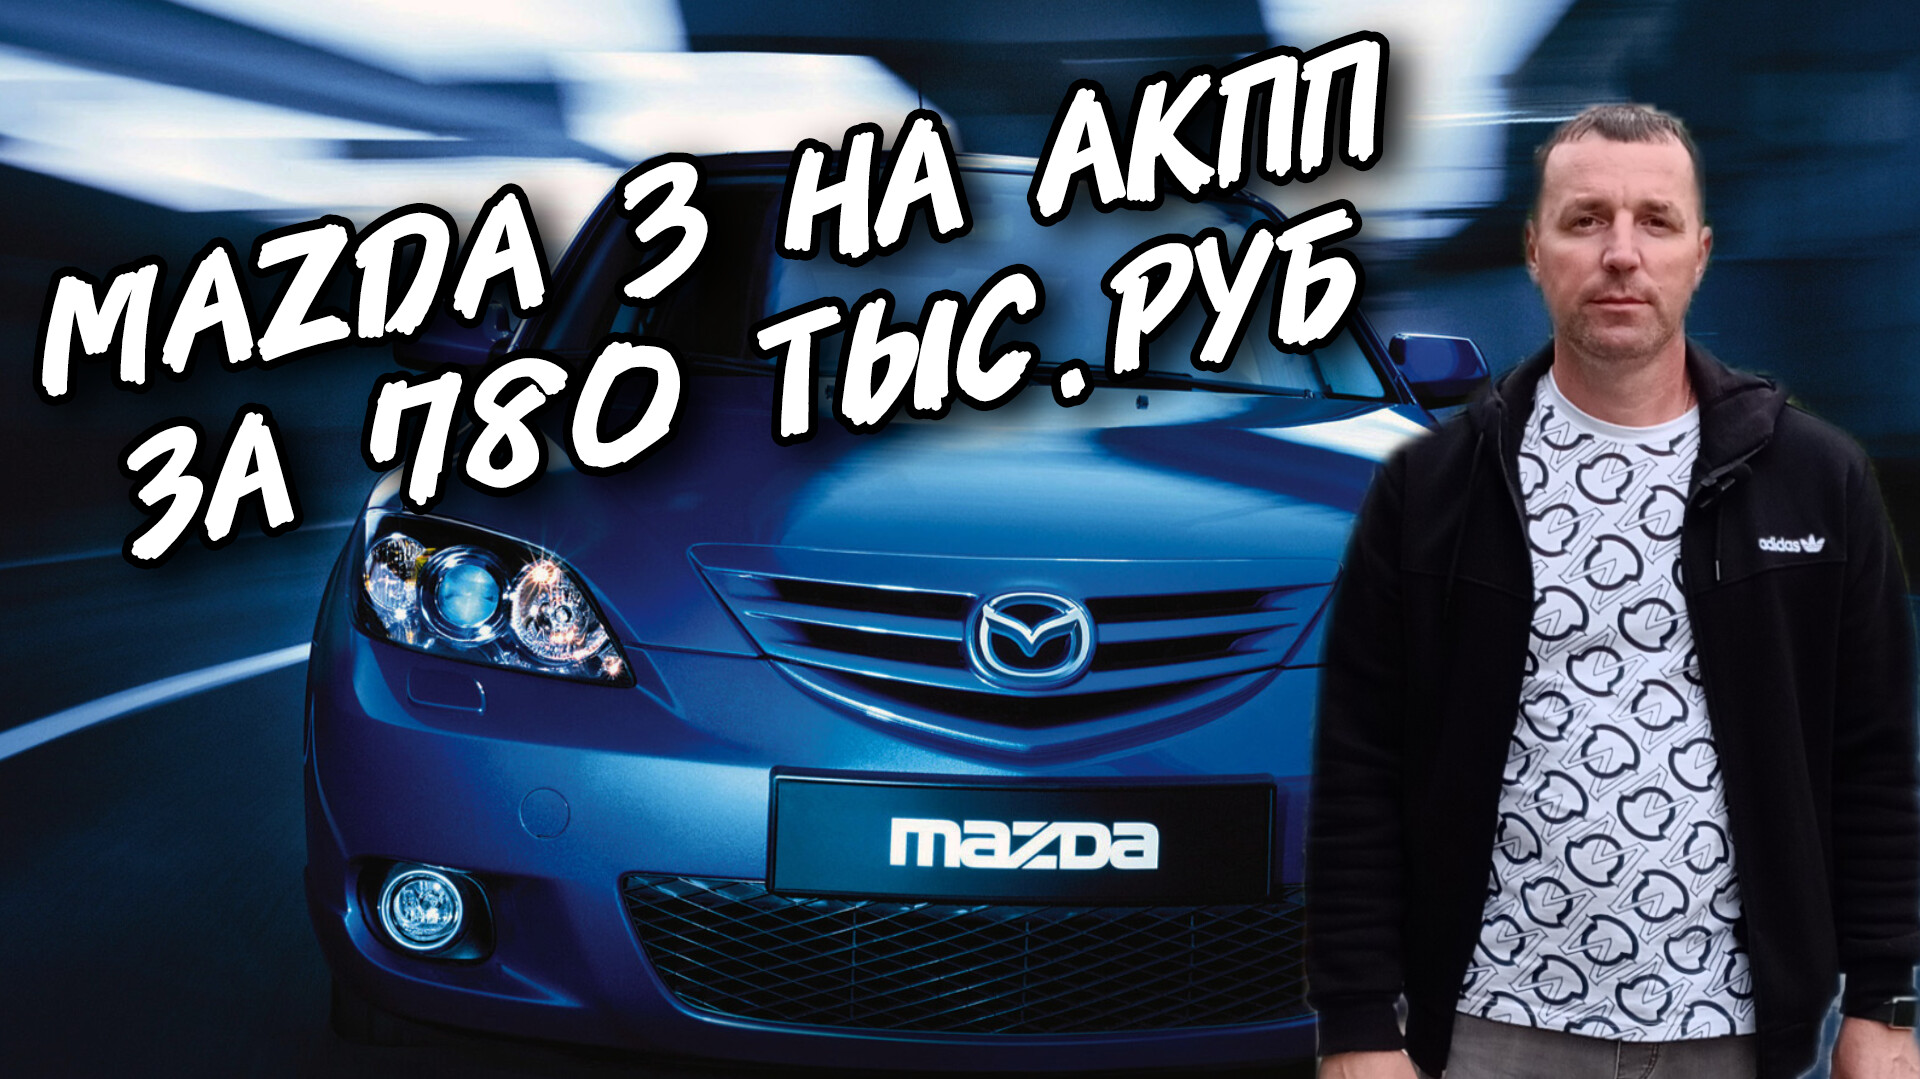 Mazda 3 НА АКПП ЗА 780 ТЫС.РУБ. #А30АВТОПОДБОР